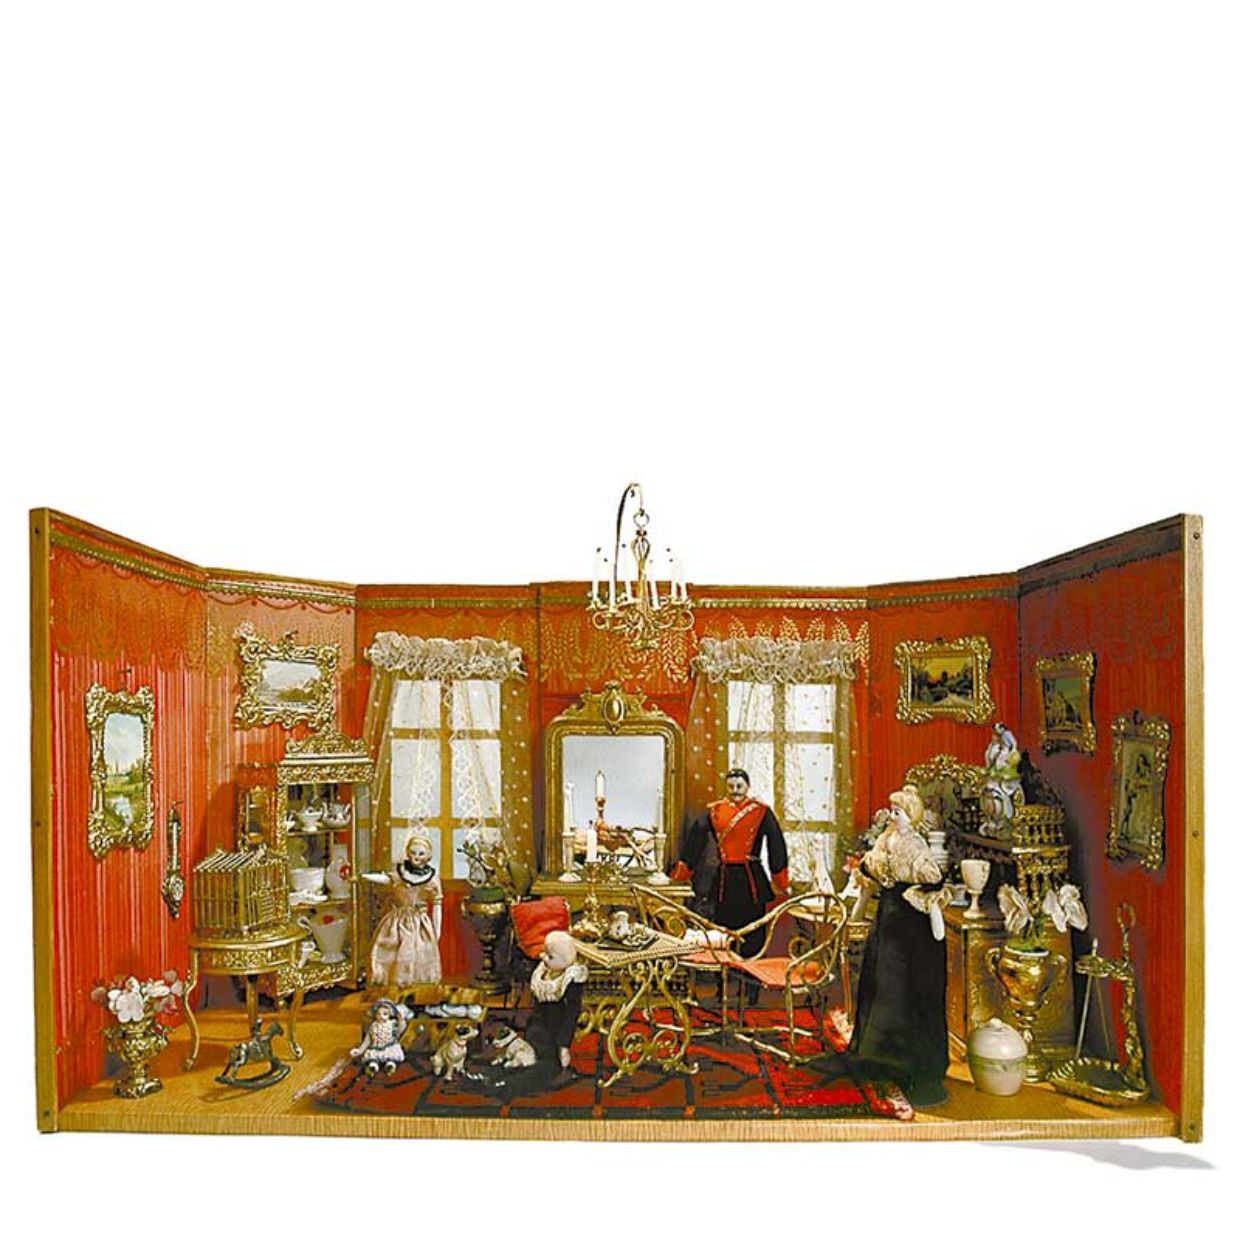 Parlour, 1870, France